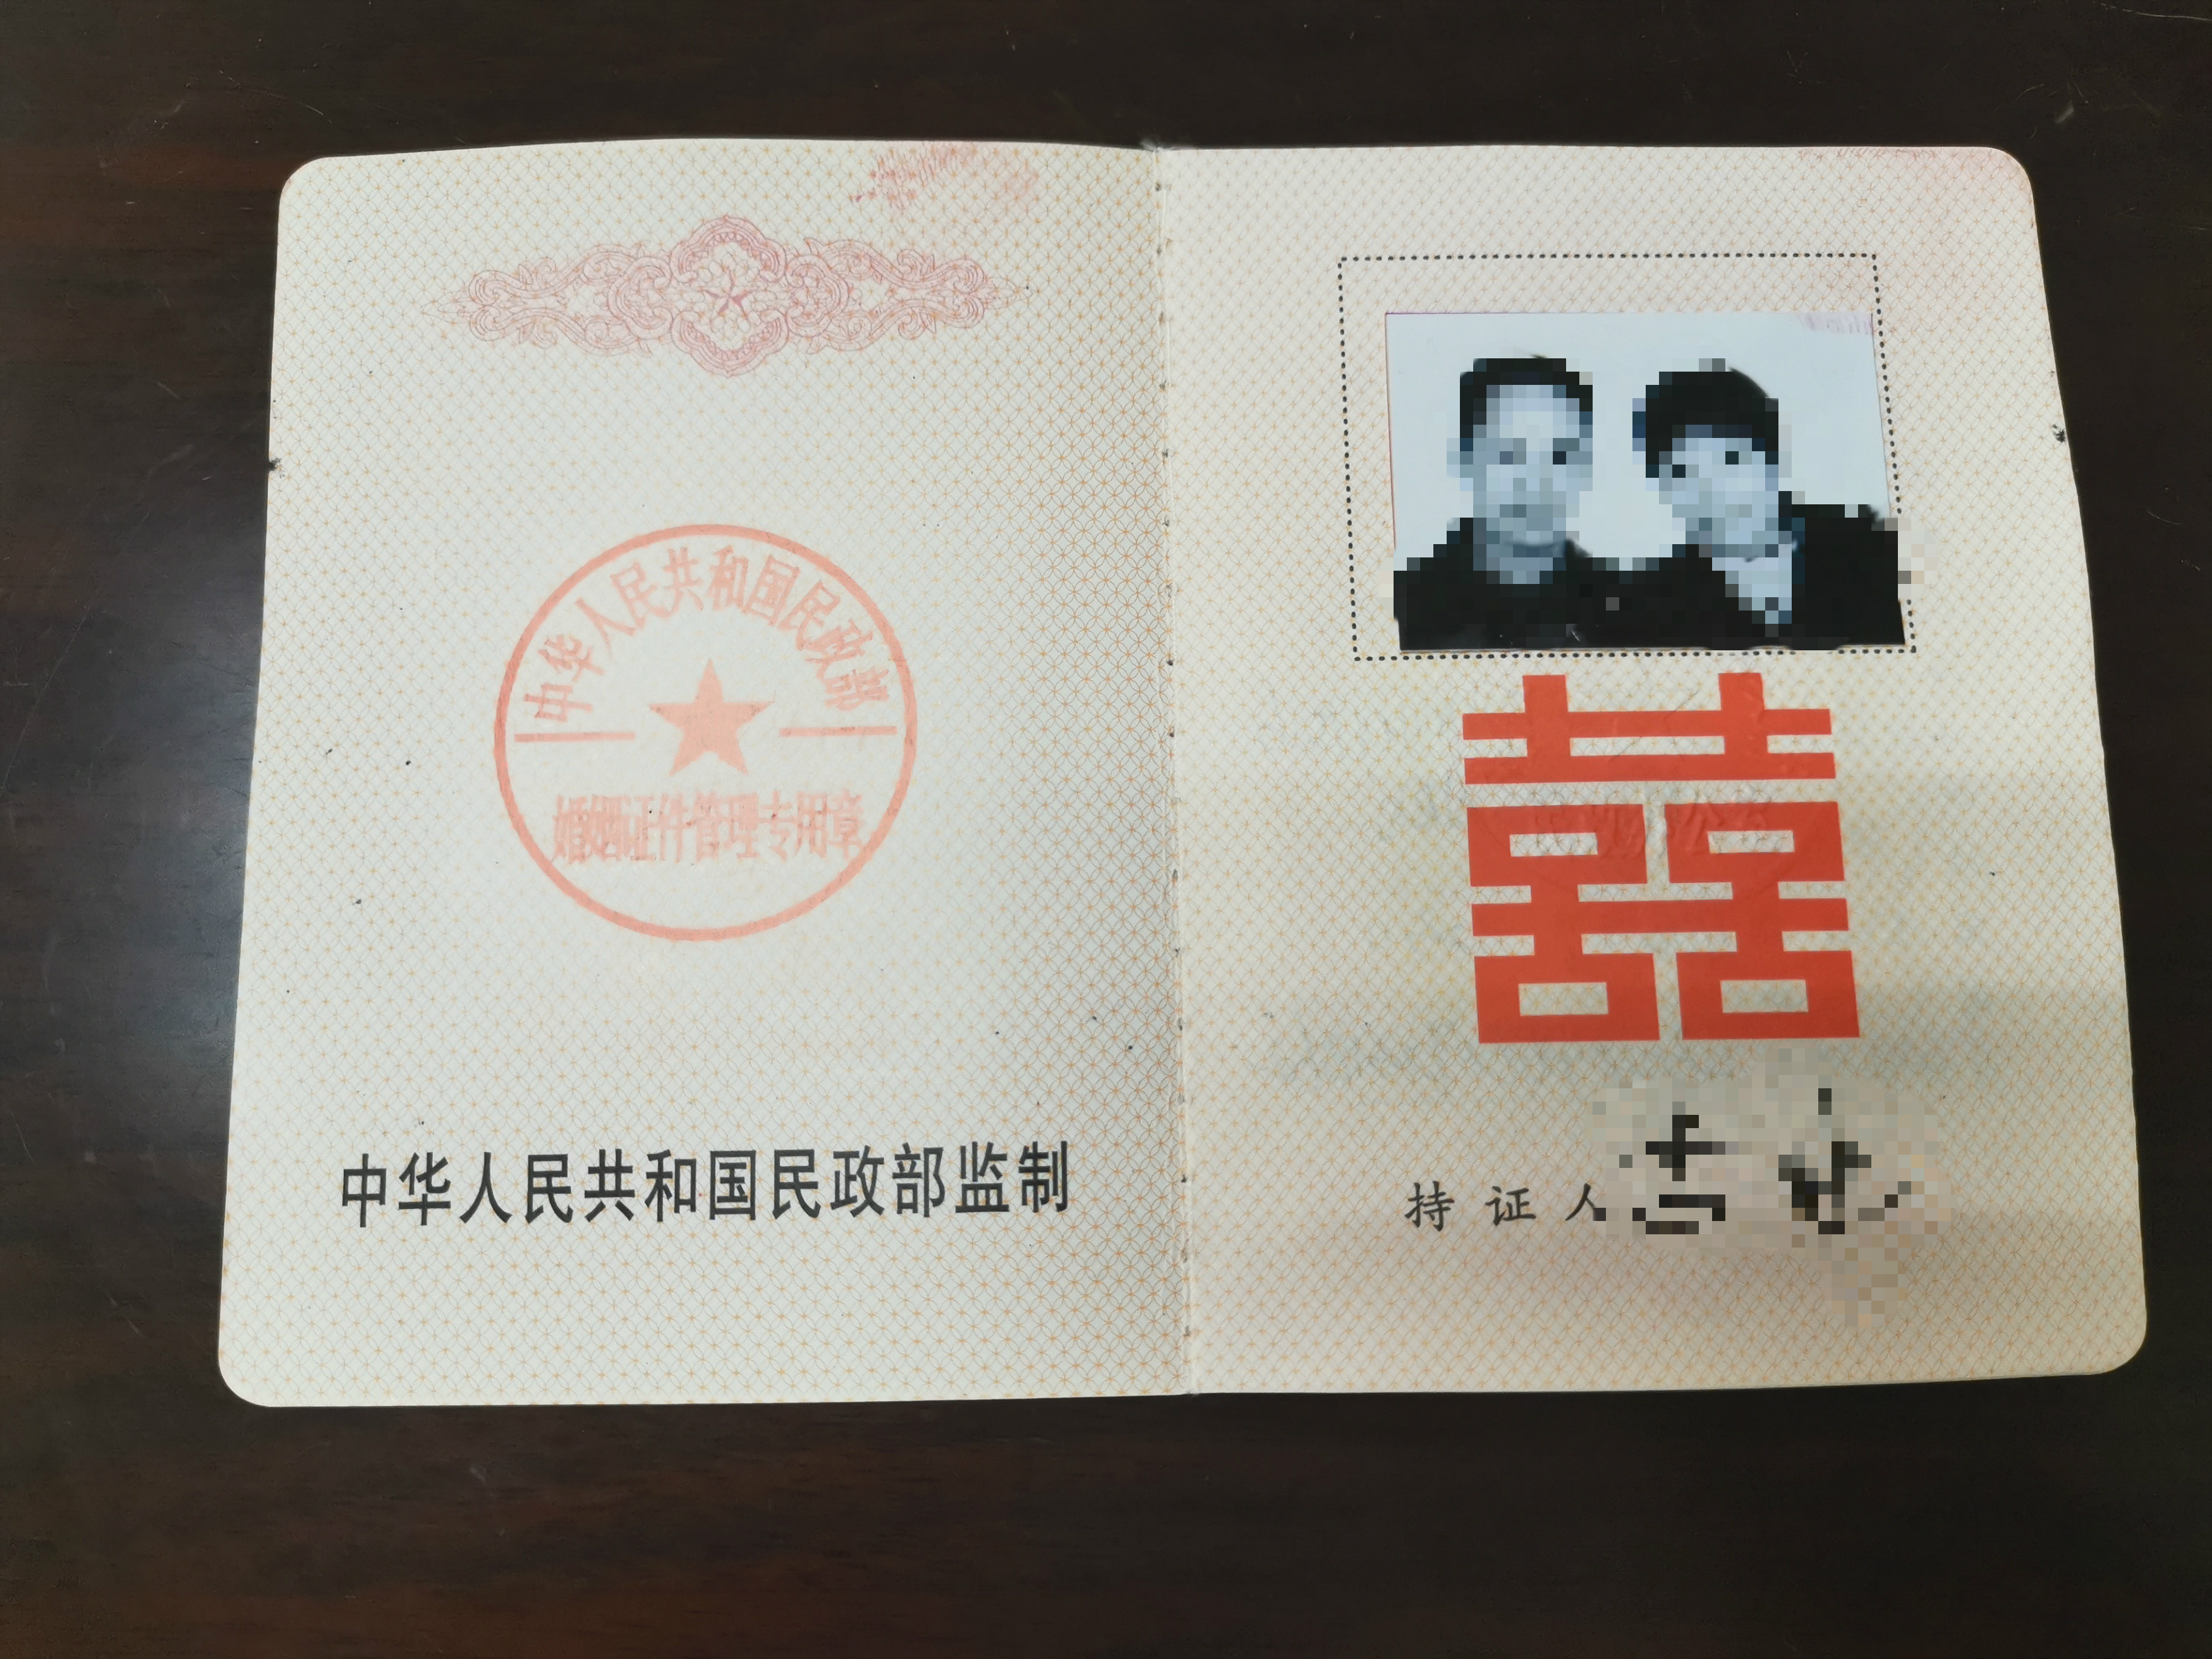 李某与陈某系夫妻关系,于2002年3月6日在茶陵县民政局办理了结婚登记